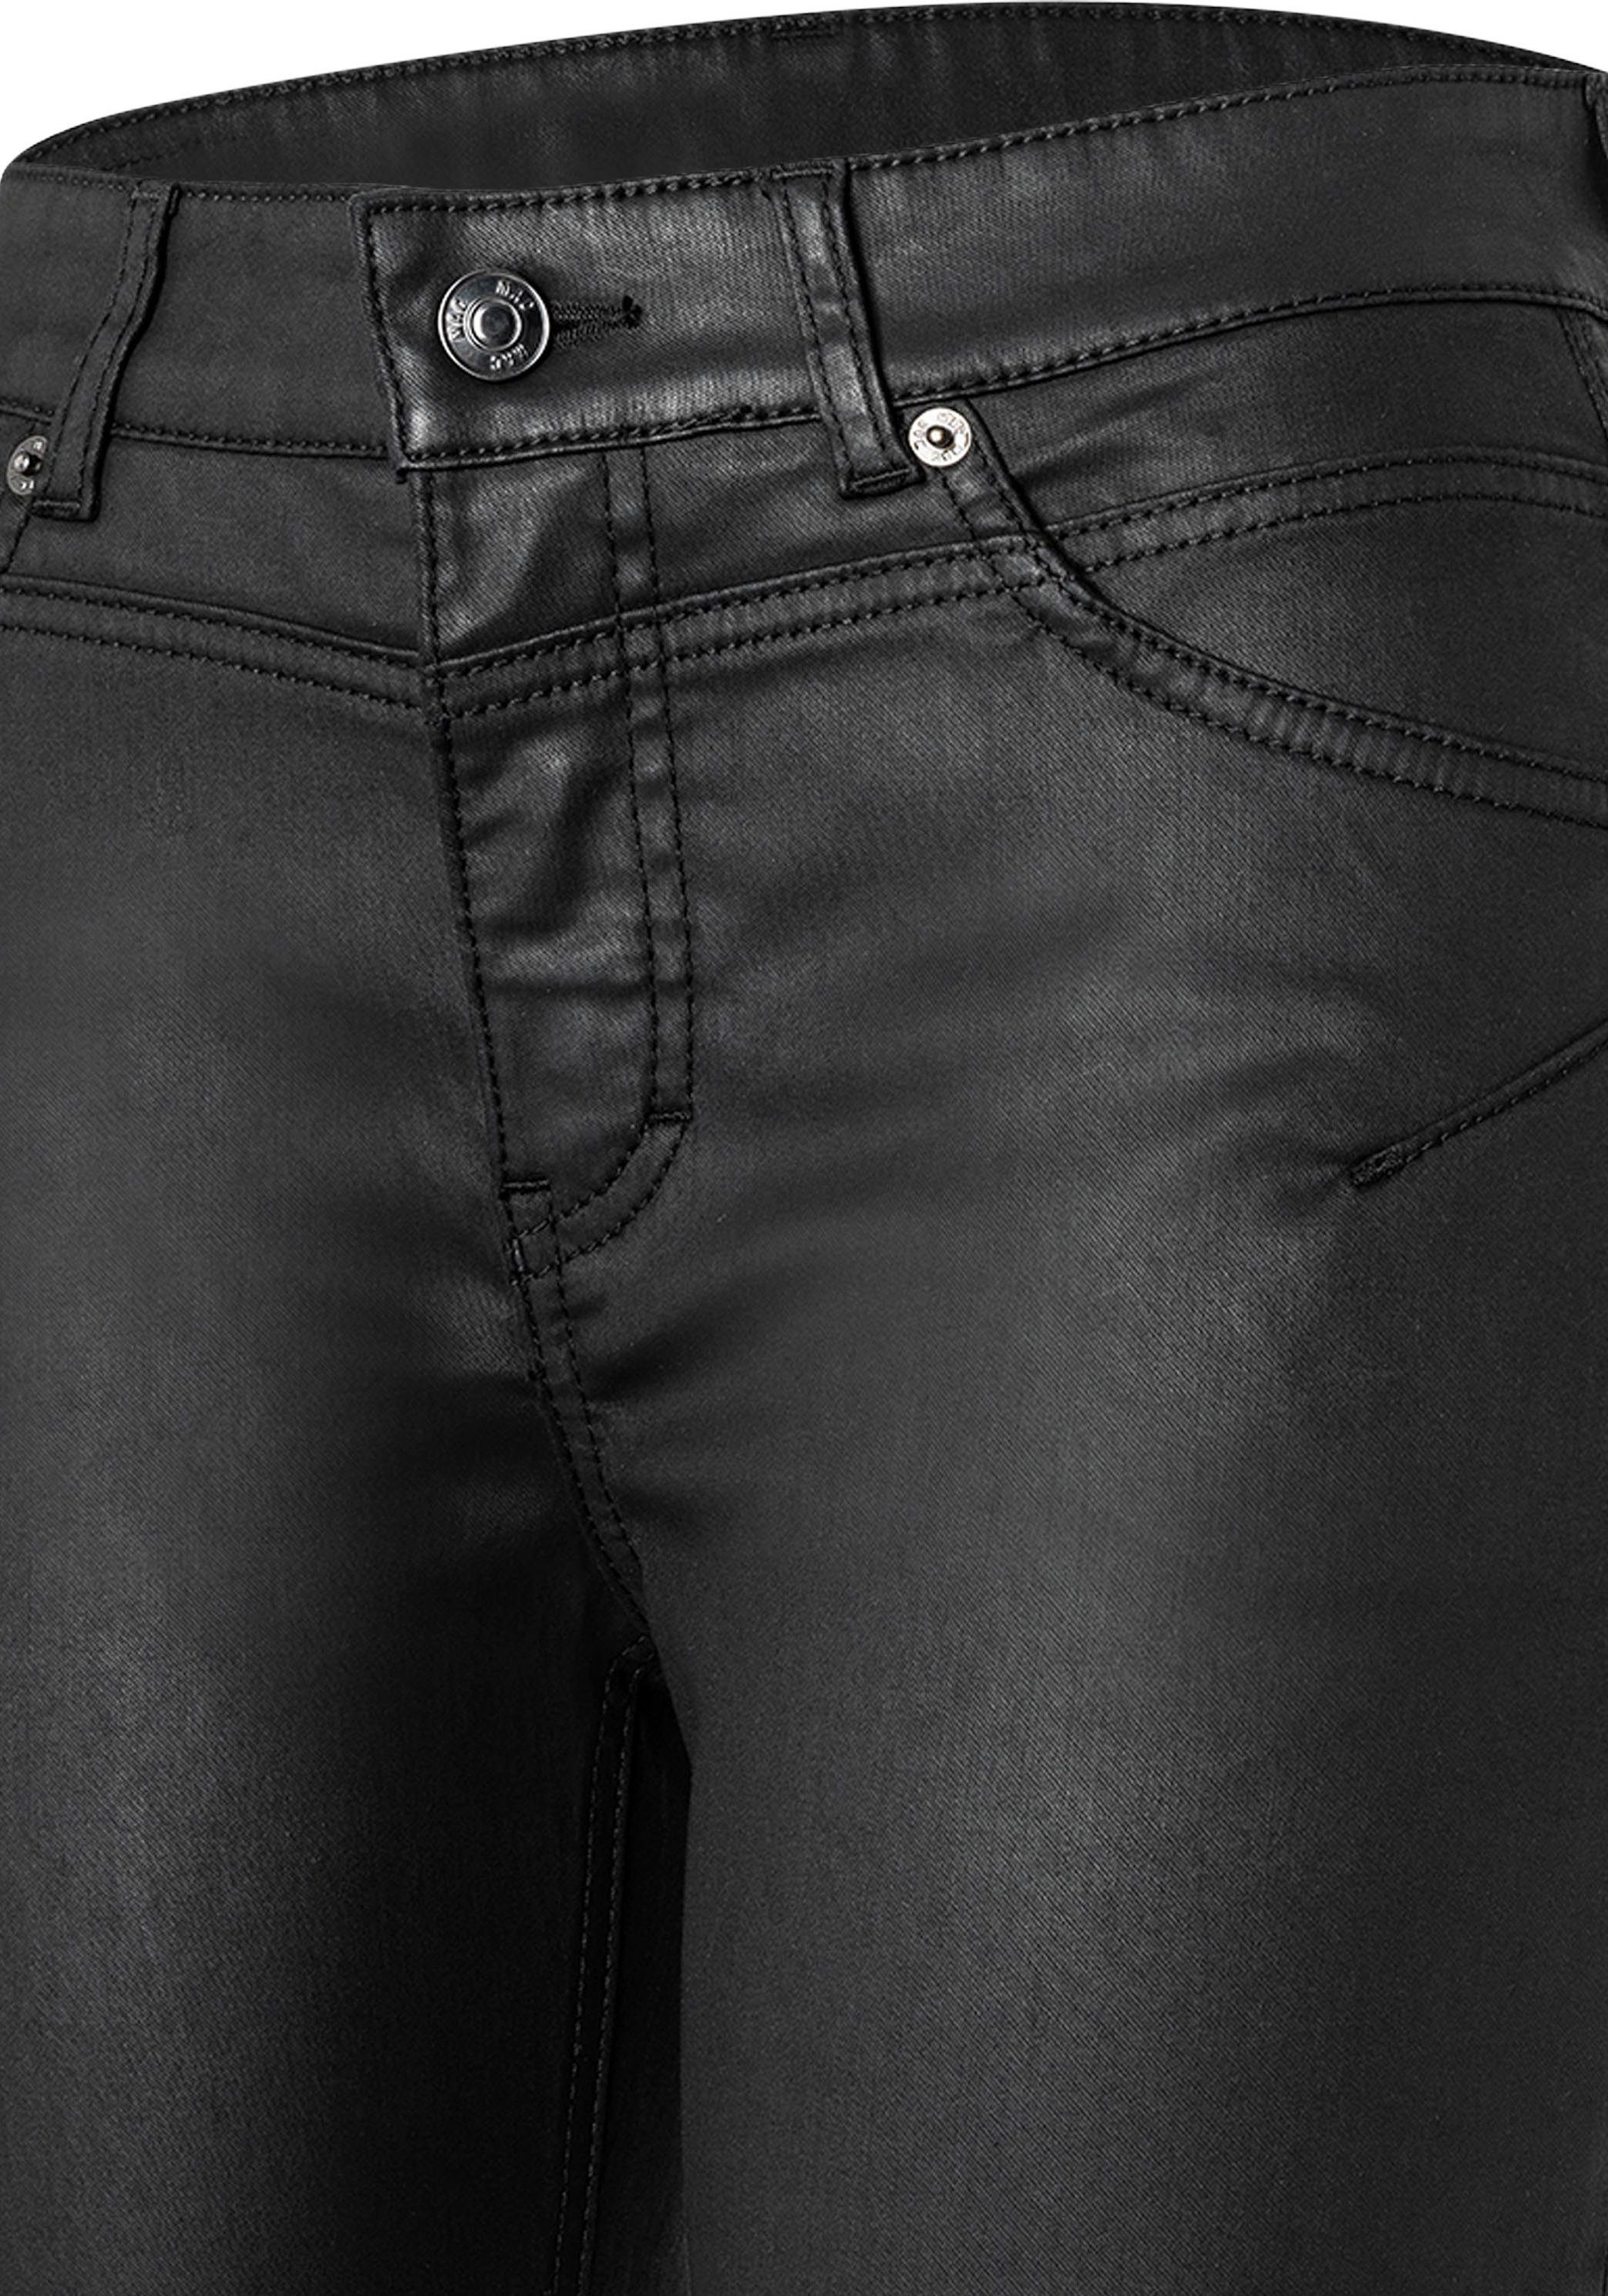 chic mit coating Bein RICH MAC am Reißverschluss-Detail black SLIM Röhrenhose